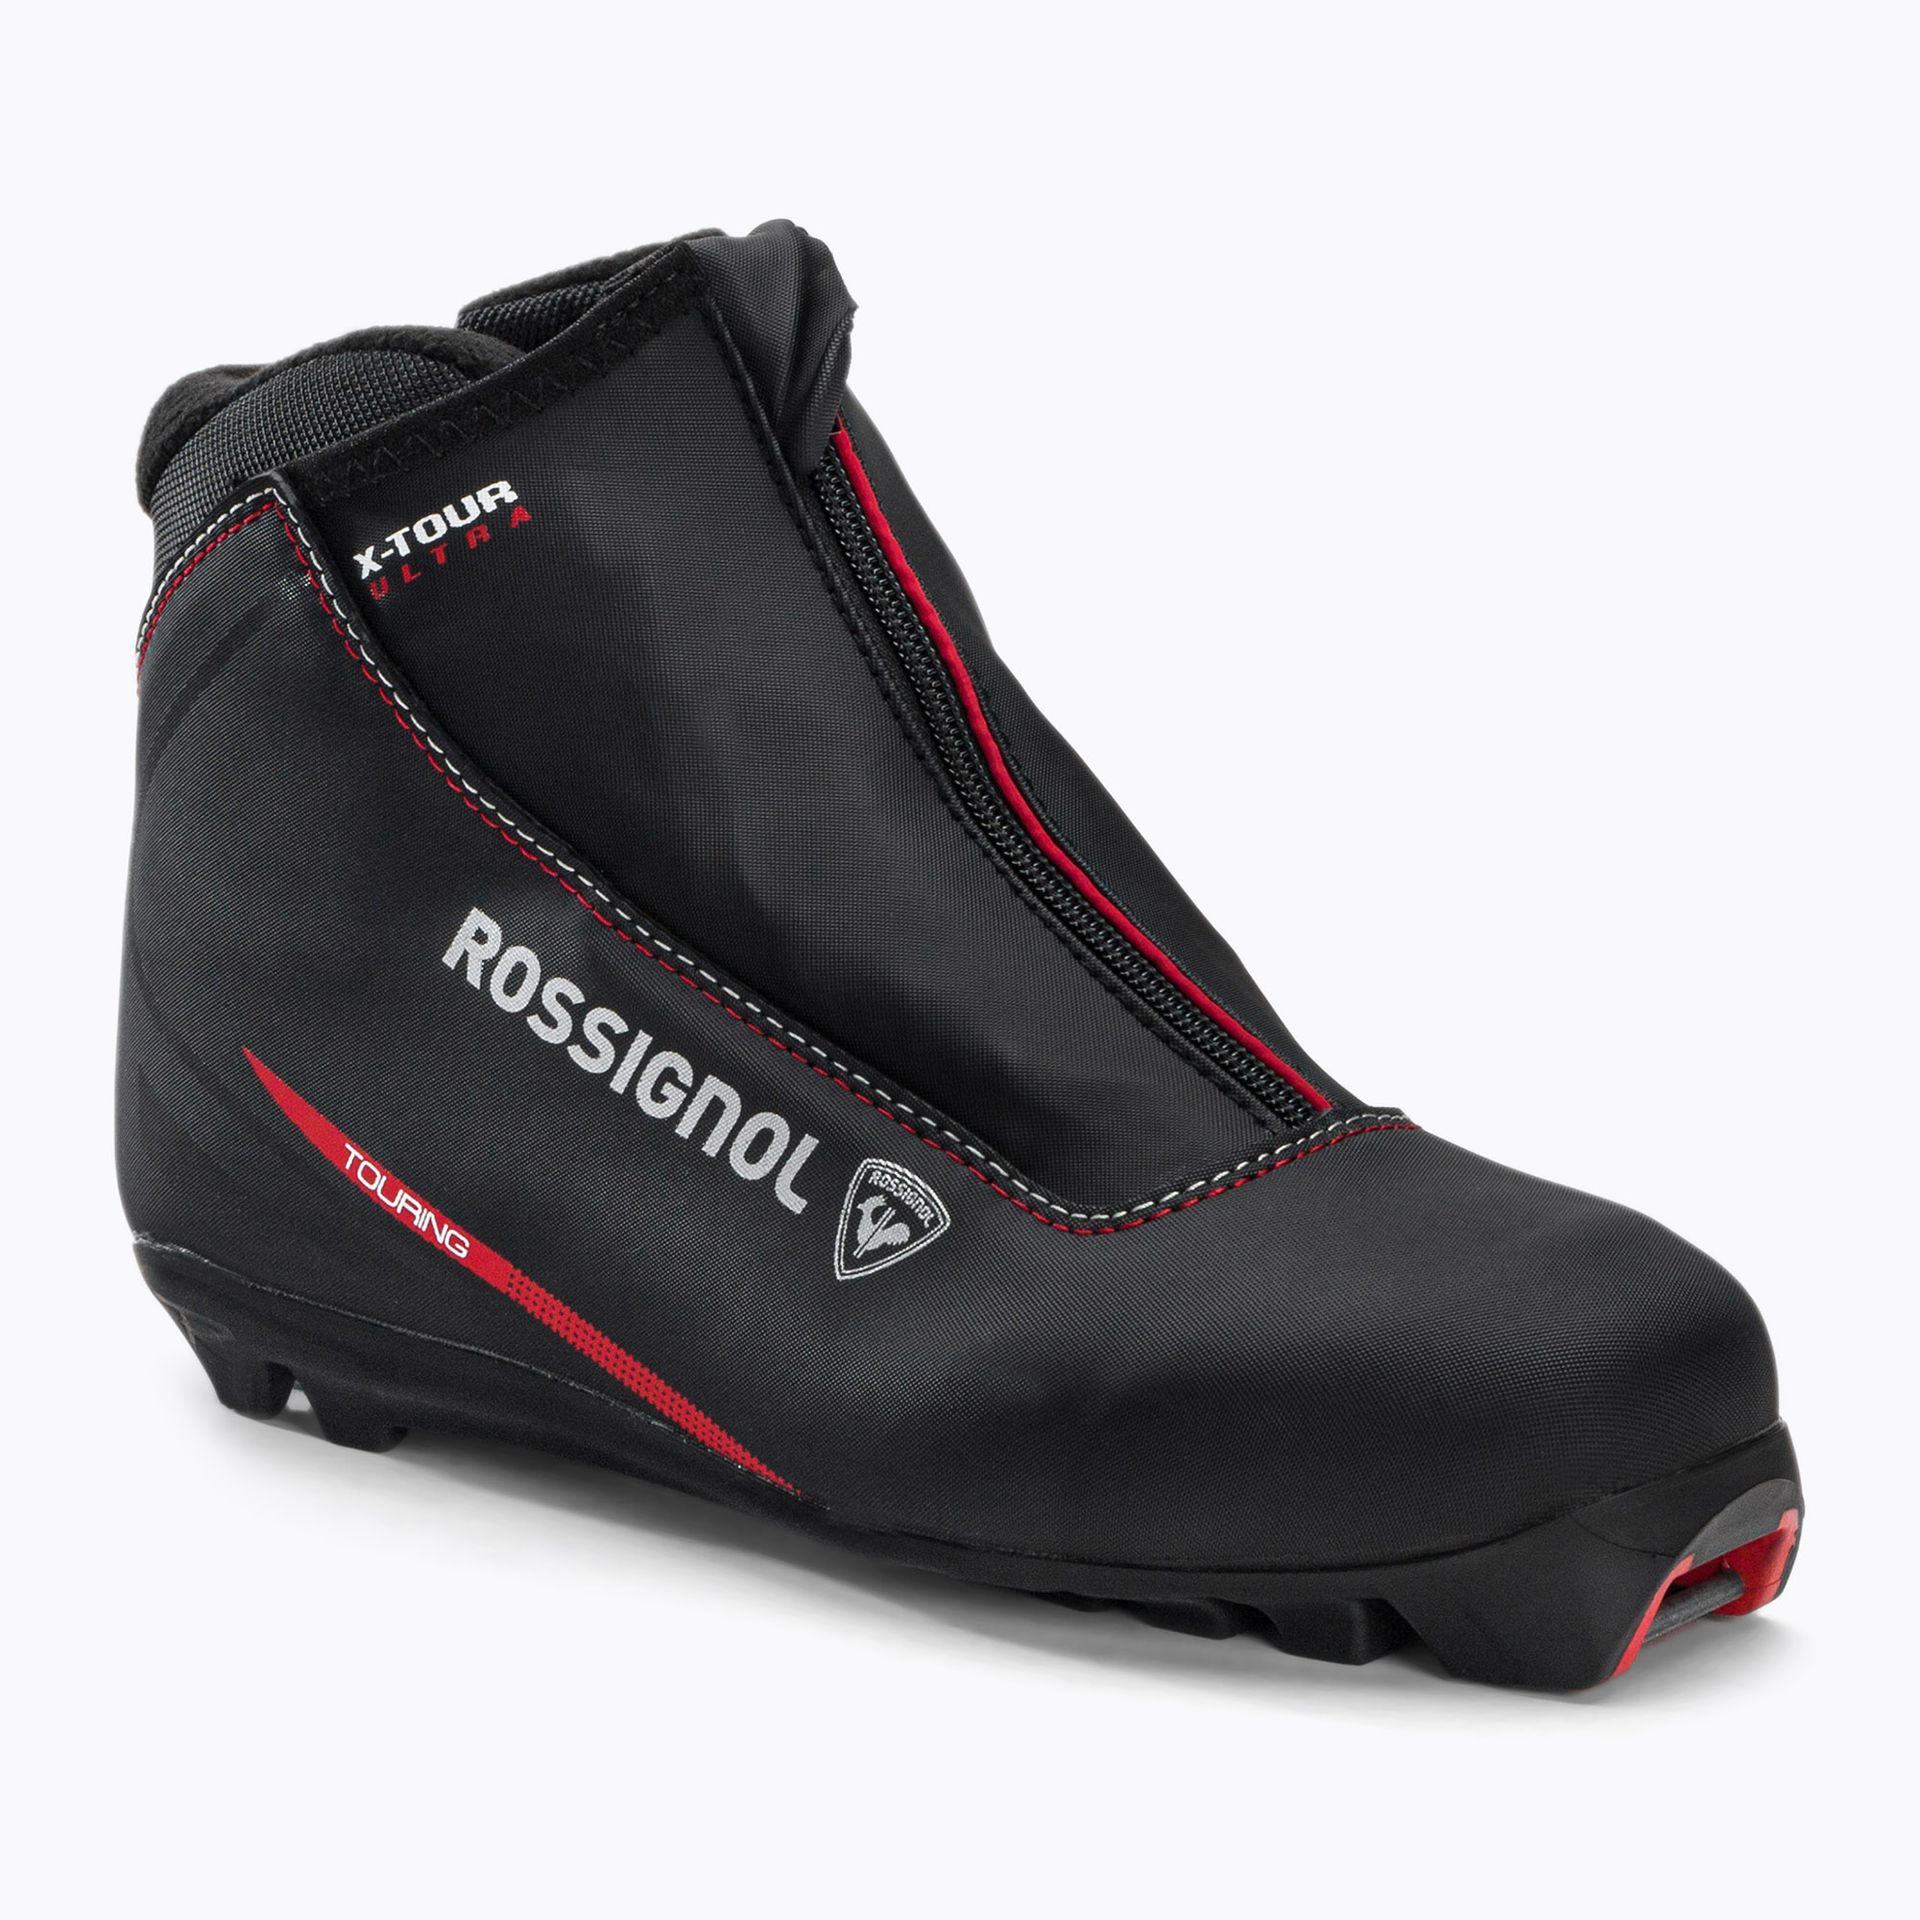 Buty do nart biegowych damskie Rossignol X-Tour Ultra czarne RIKW060  37 eu